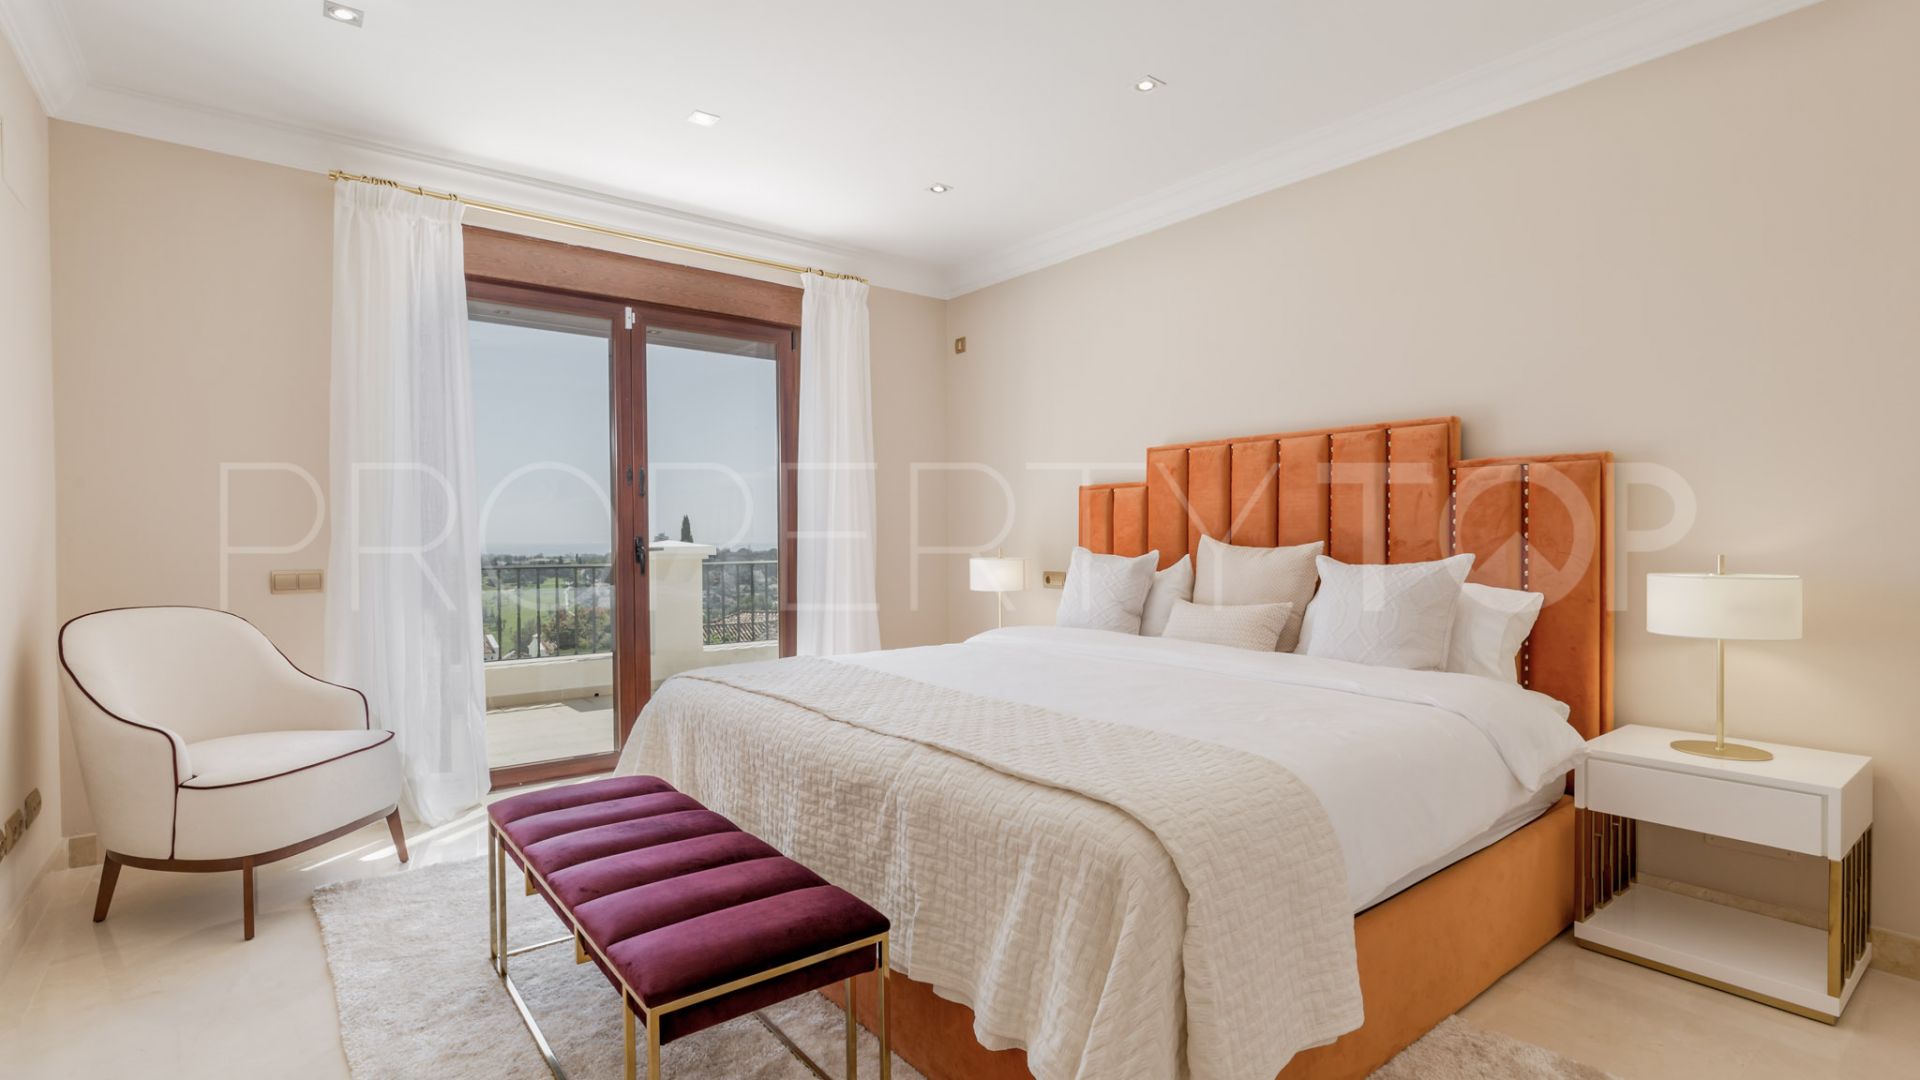 11 bedrooms villa in Paraiso Alto for sale